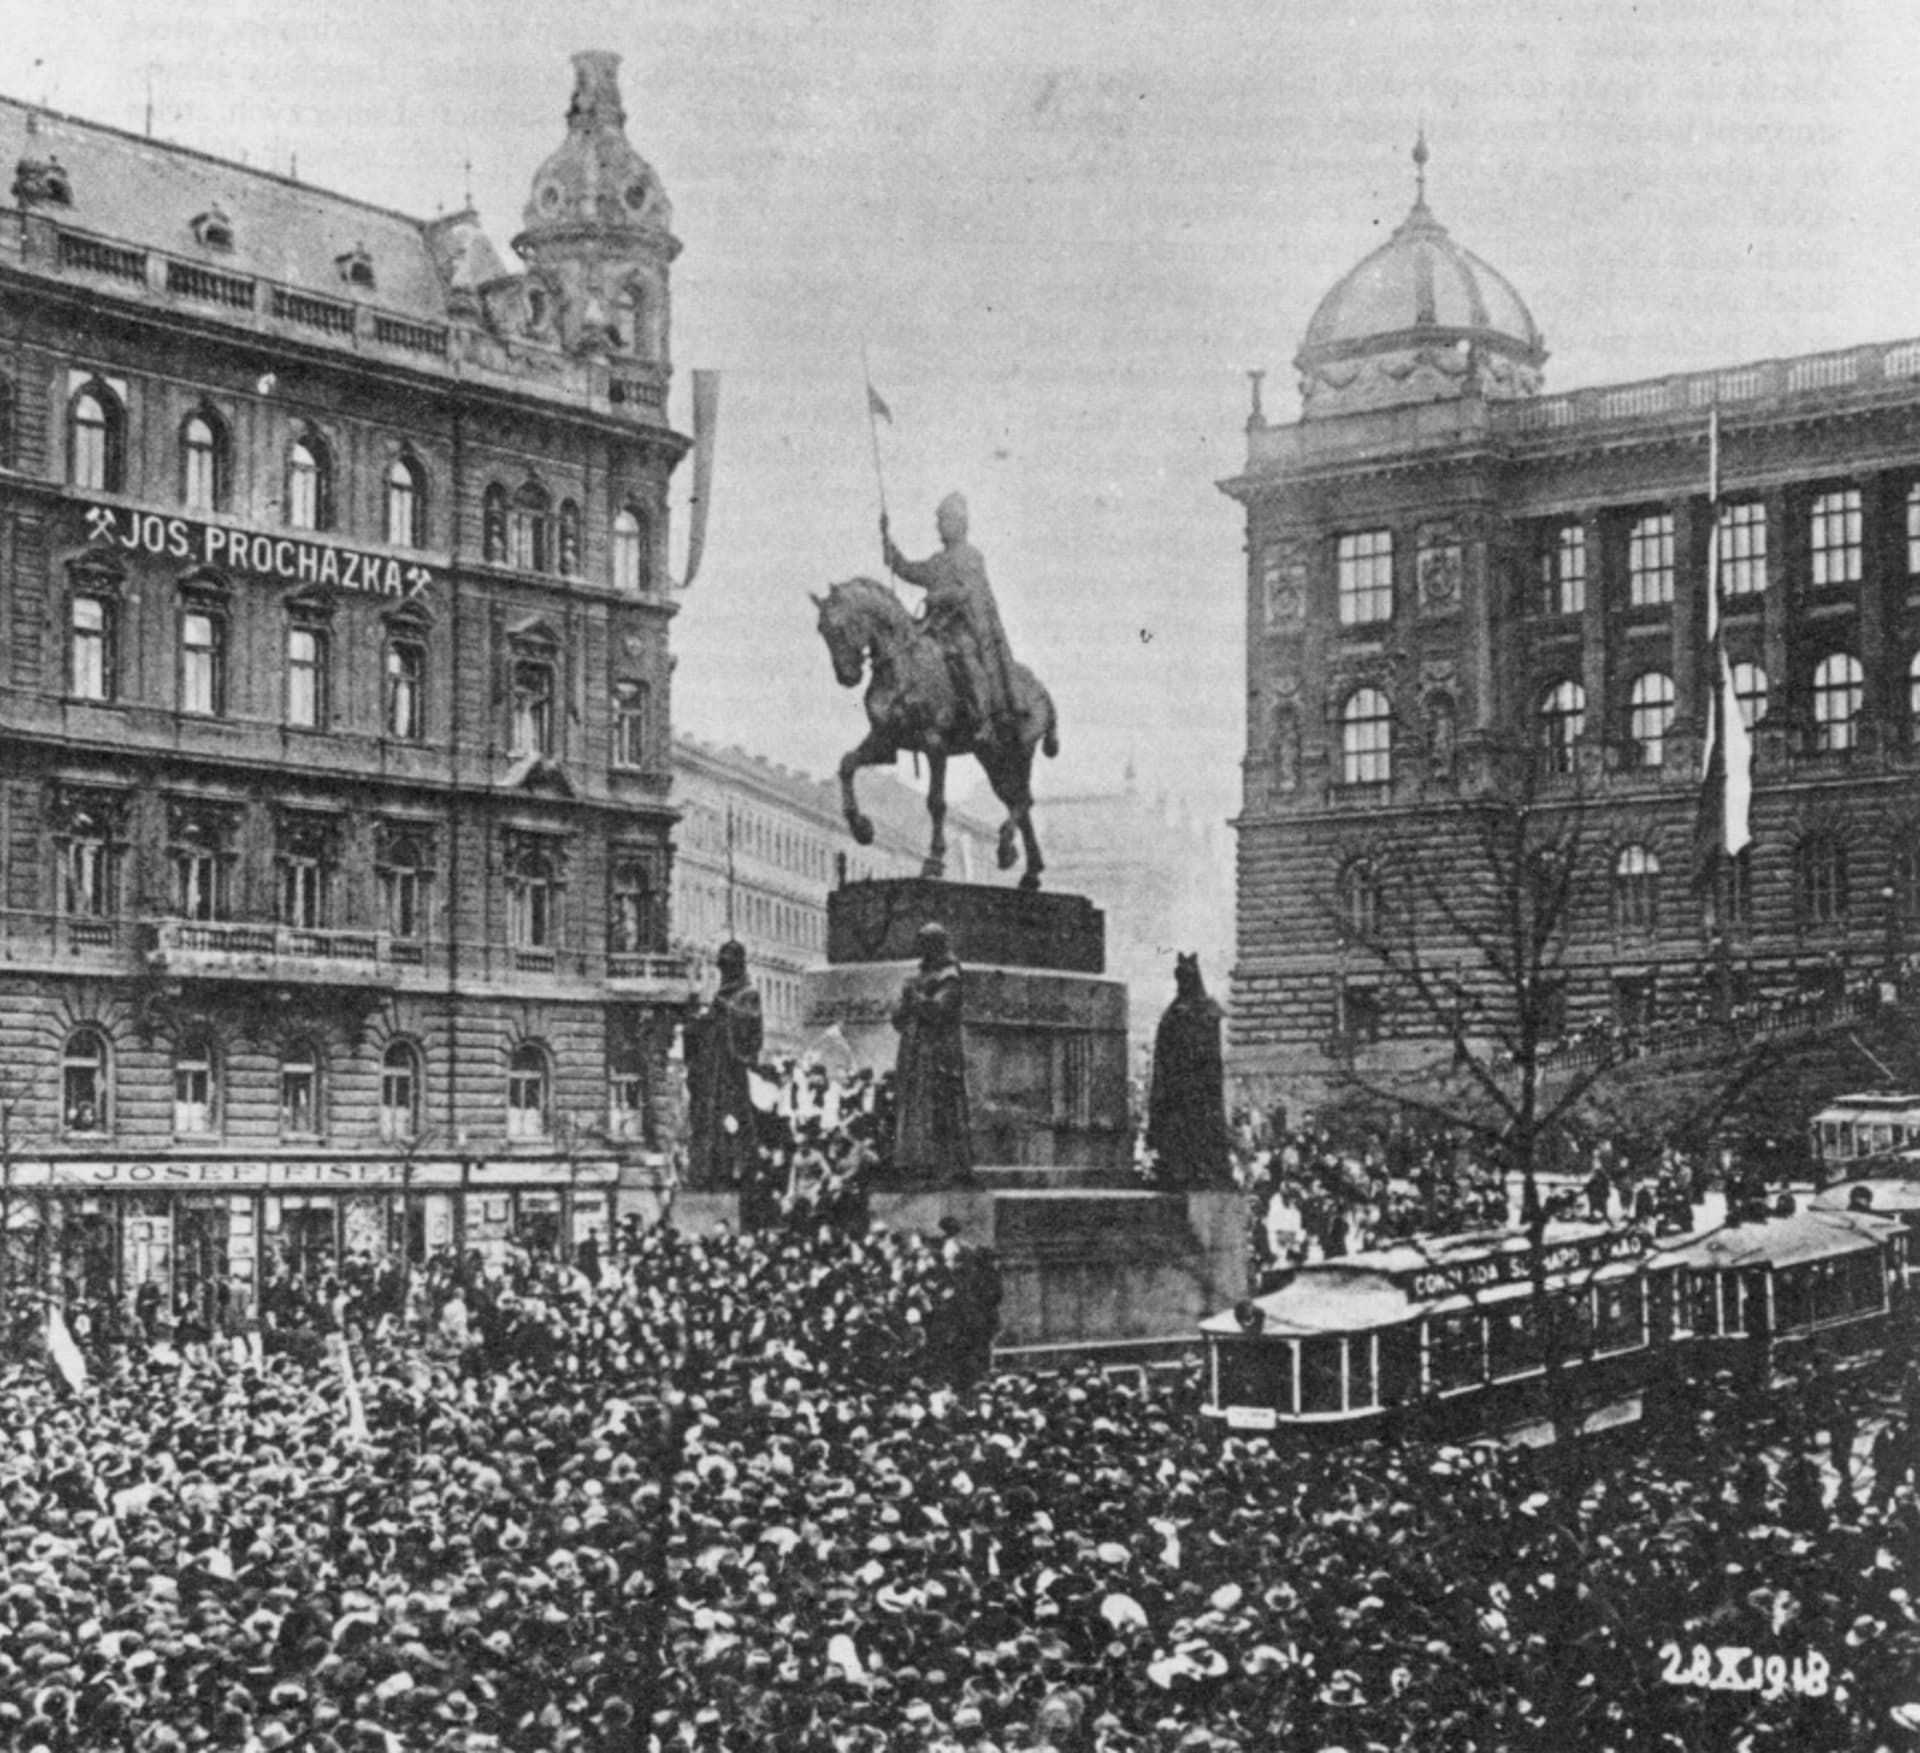 Václavské náměstí 28. října 1918. Monarchie se hroutí, vzniká samostatná republika.